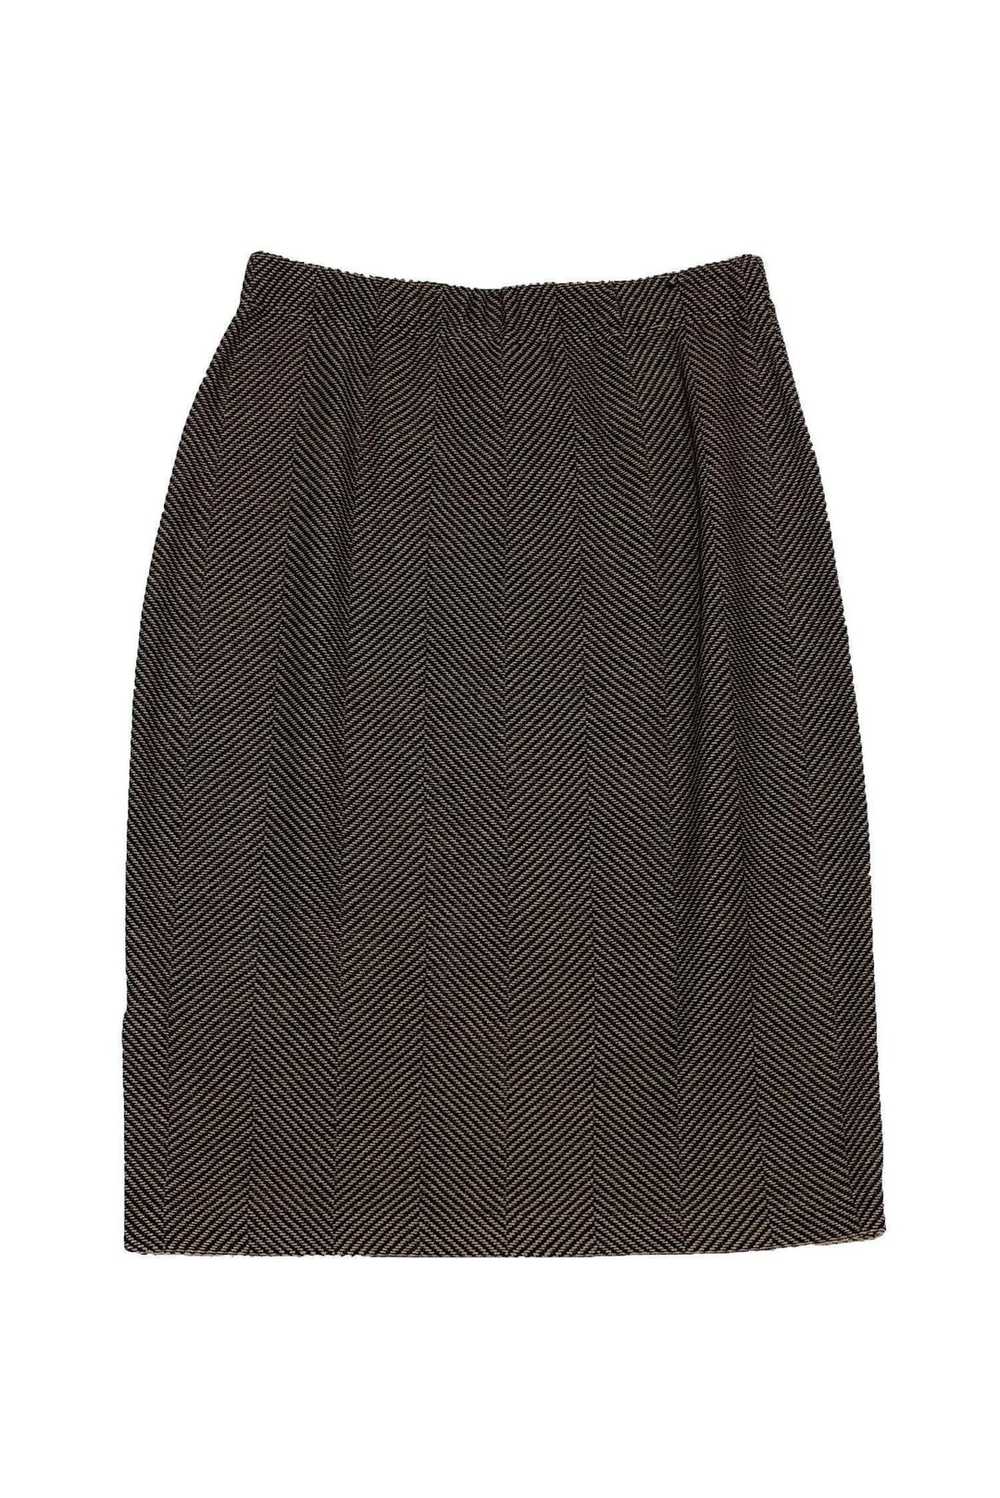 St. John - Tan & Black Chevron Skirt Sz 6 - image 1